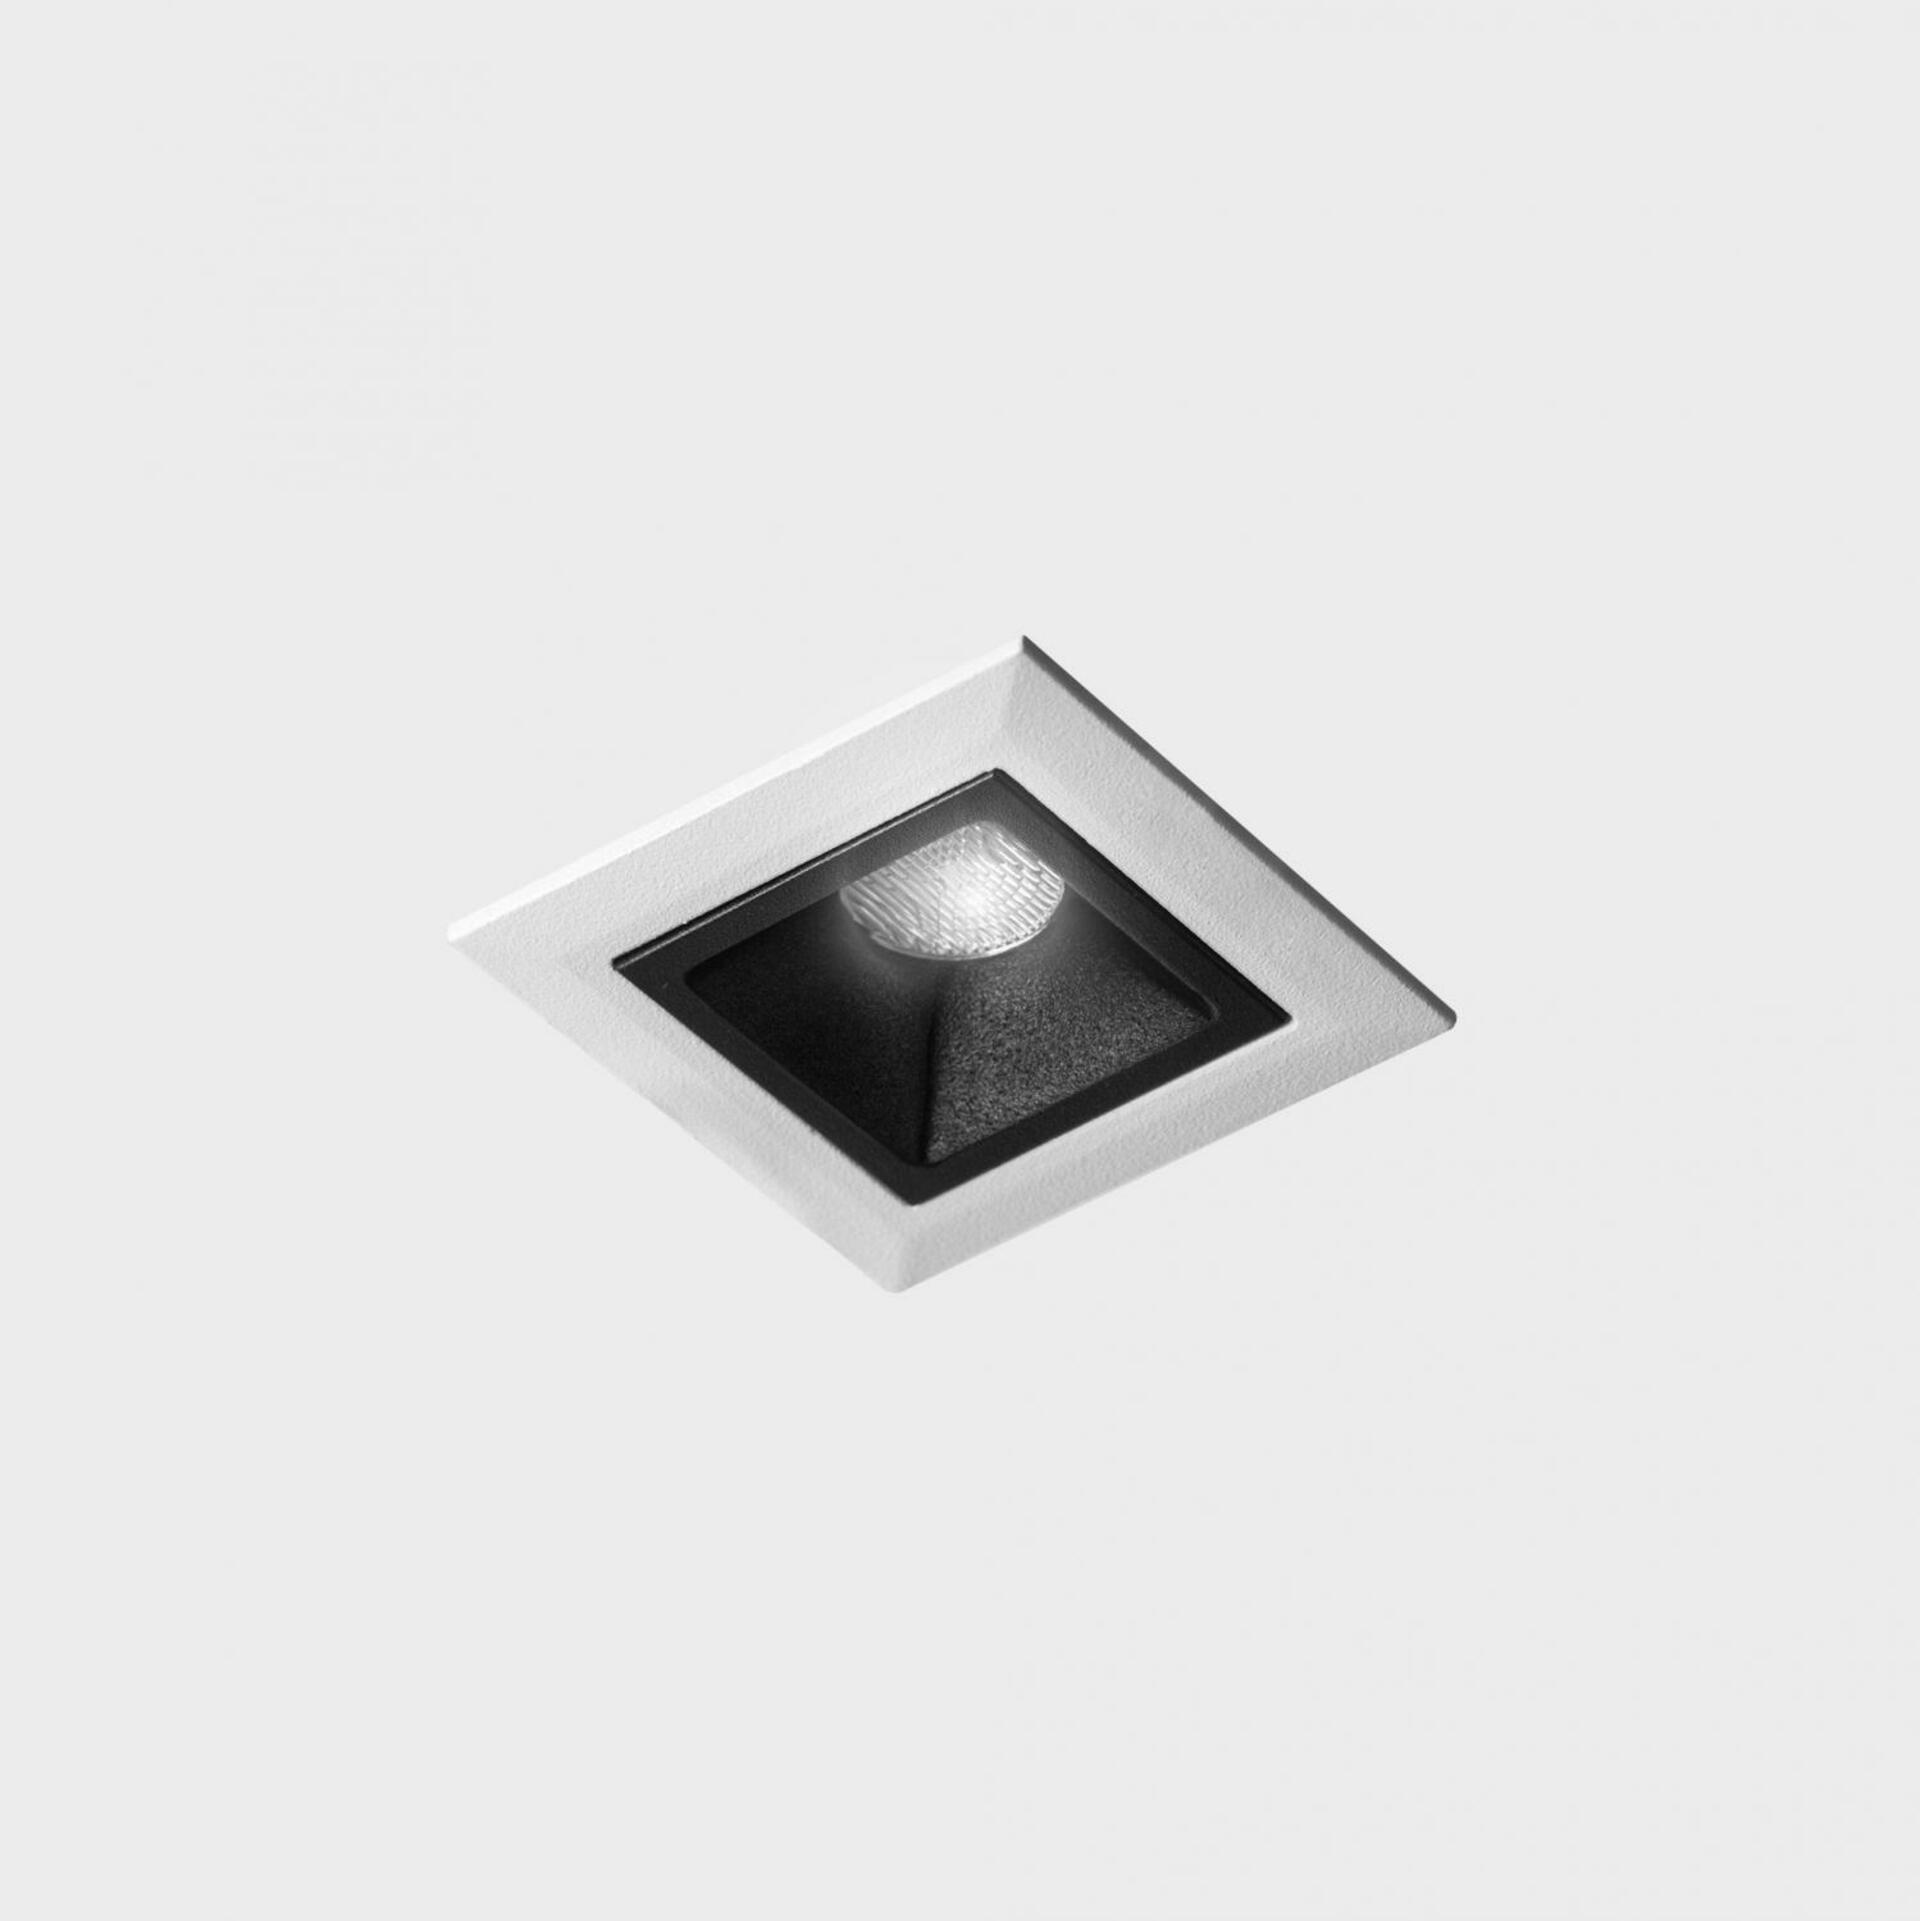 KOHL LIGHTING KOHL-Lighting NSES zapuštěné svítidlo s rámečkem 45x45 mm bílá-černá 2 W CRI 90 3000K DALI